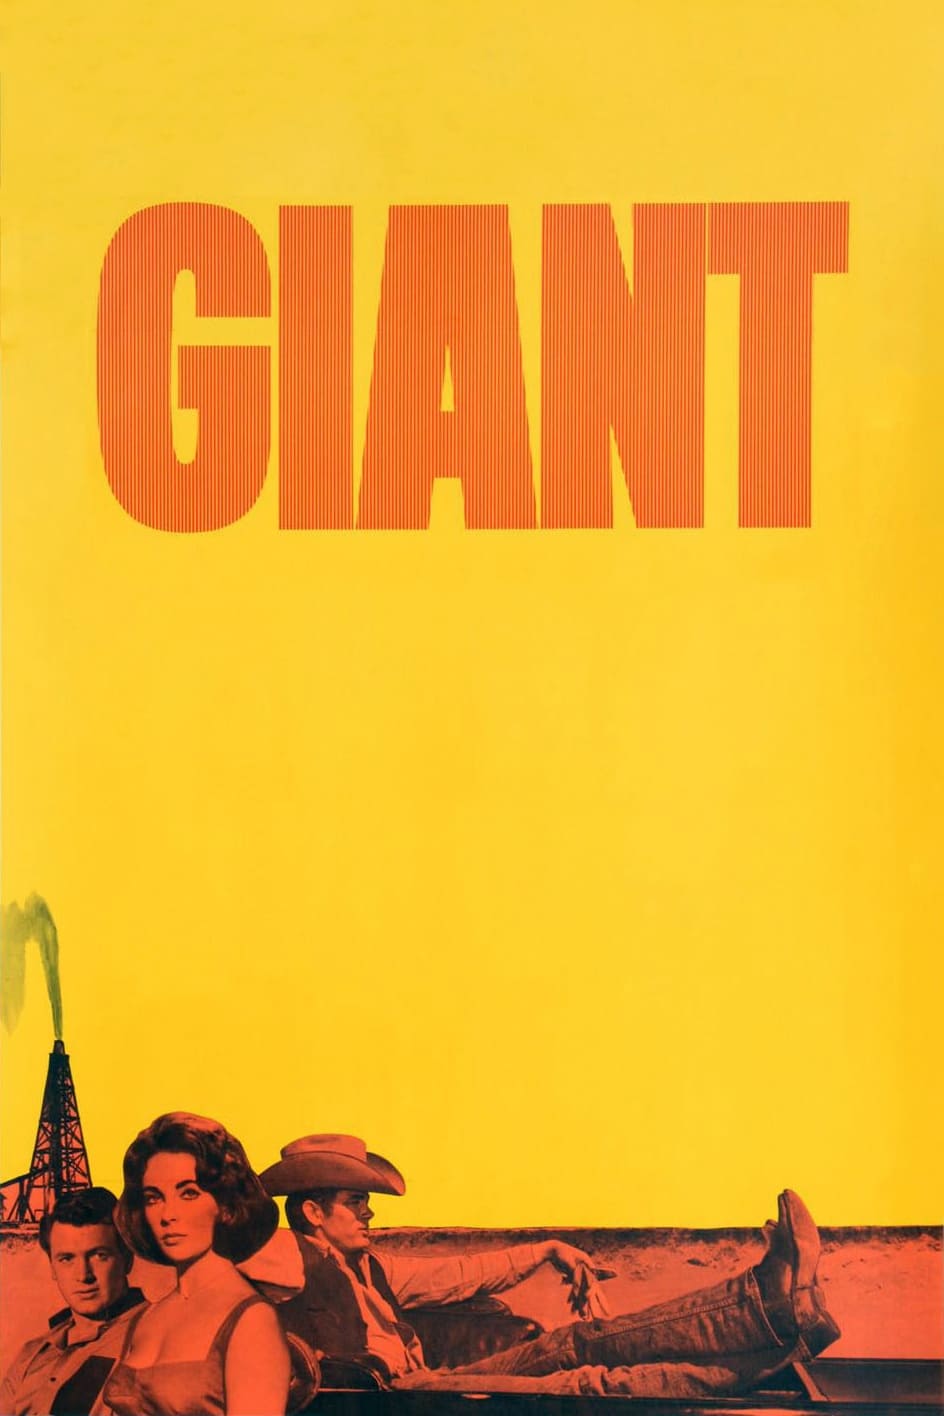 Gigante (1956)